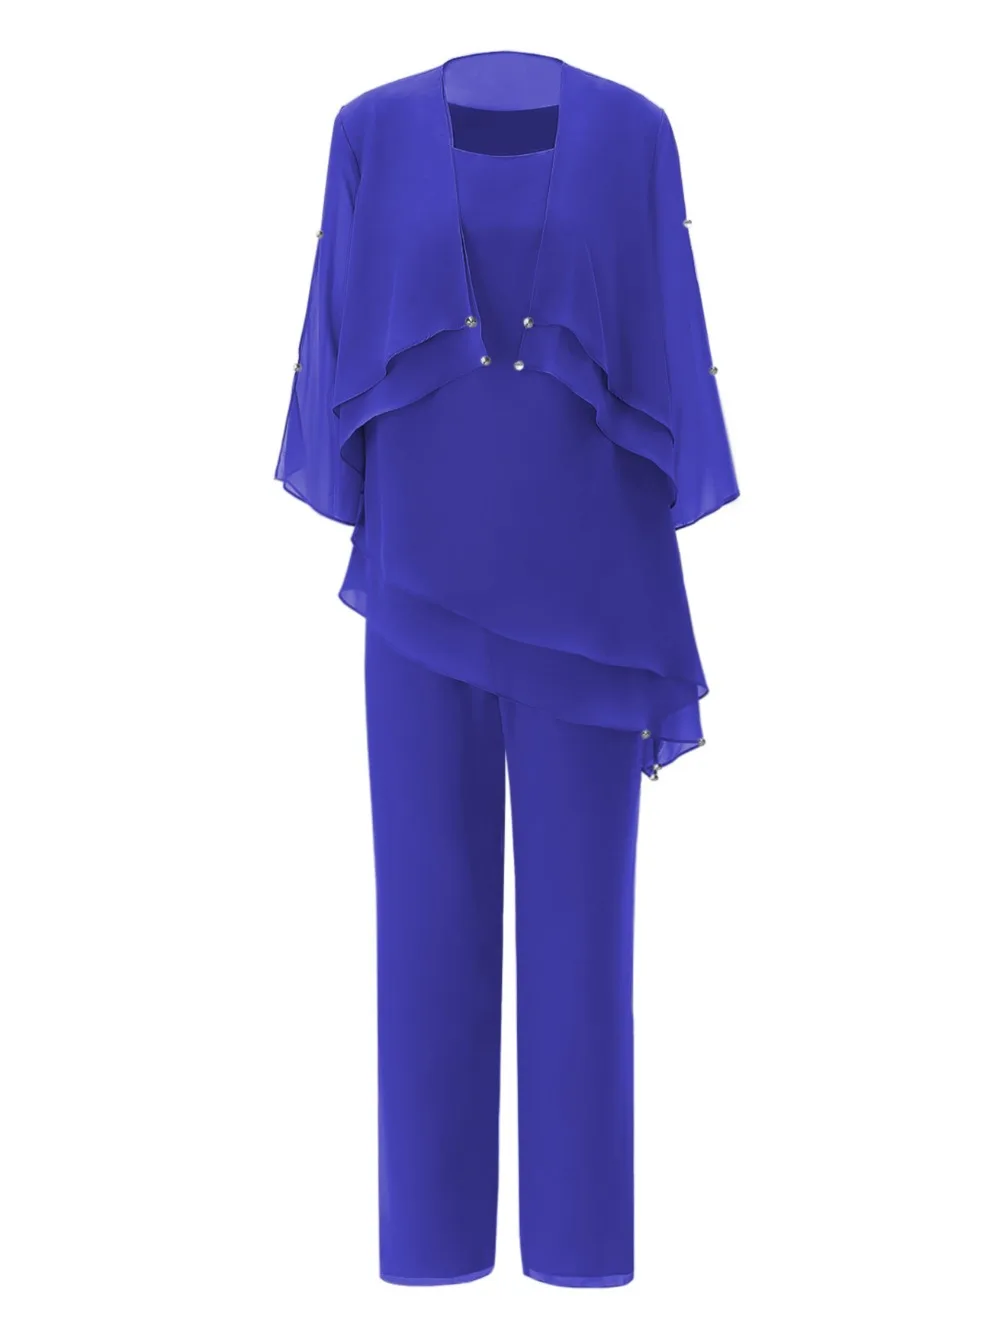 SOLOVEDRESS темно-синего цвета, женское асимметричное шифоновое платье брюки для матери невесты, костюмы, наряд с шортами, куртка из 3 предметов, SL-M11